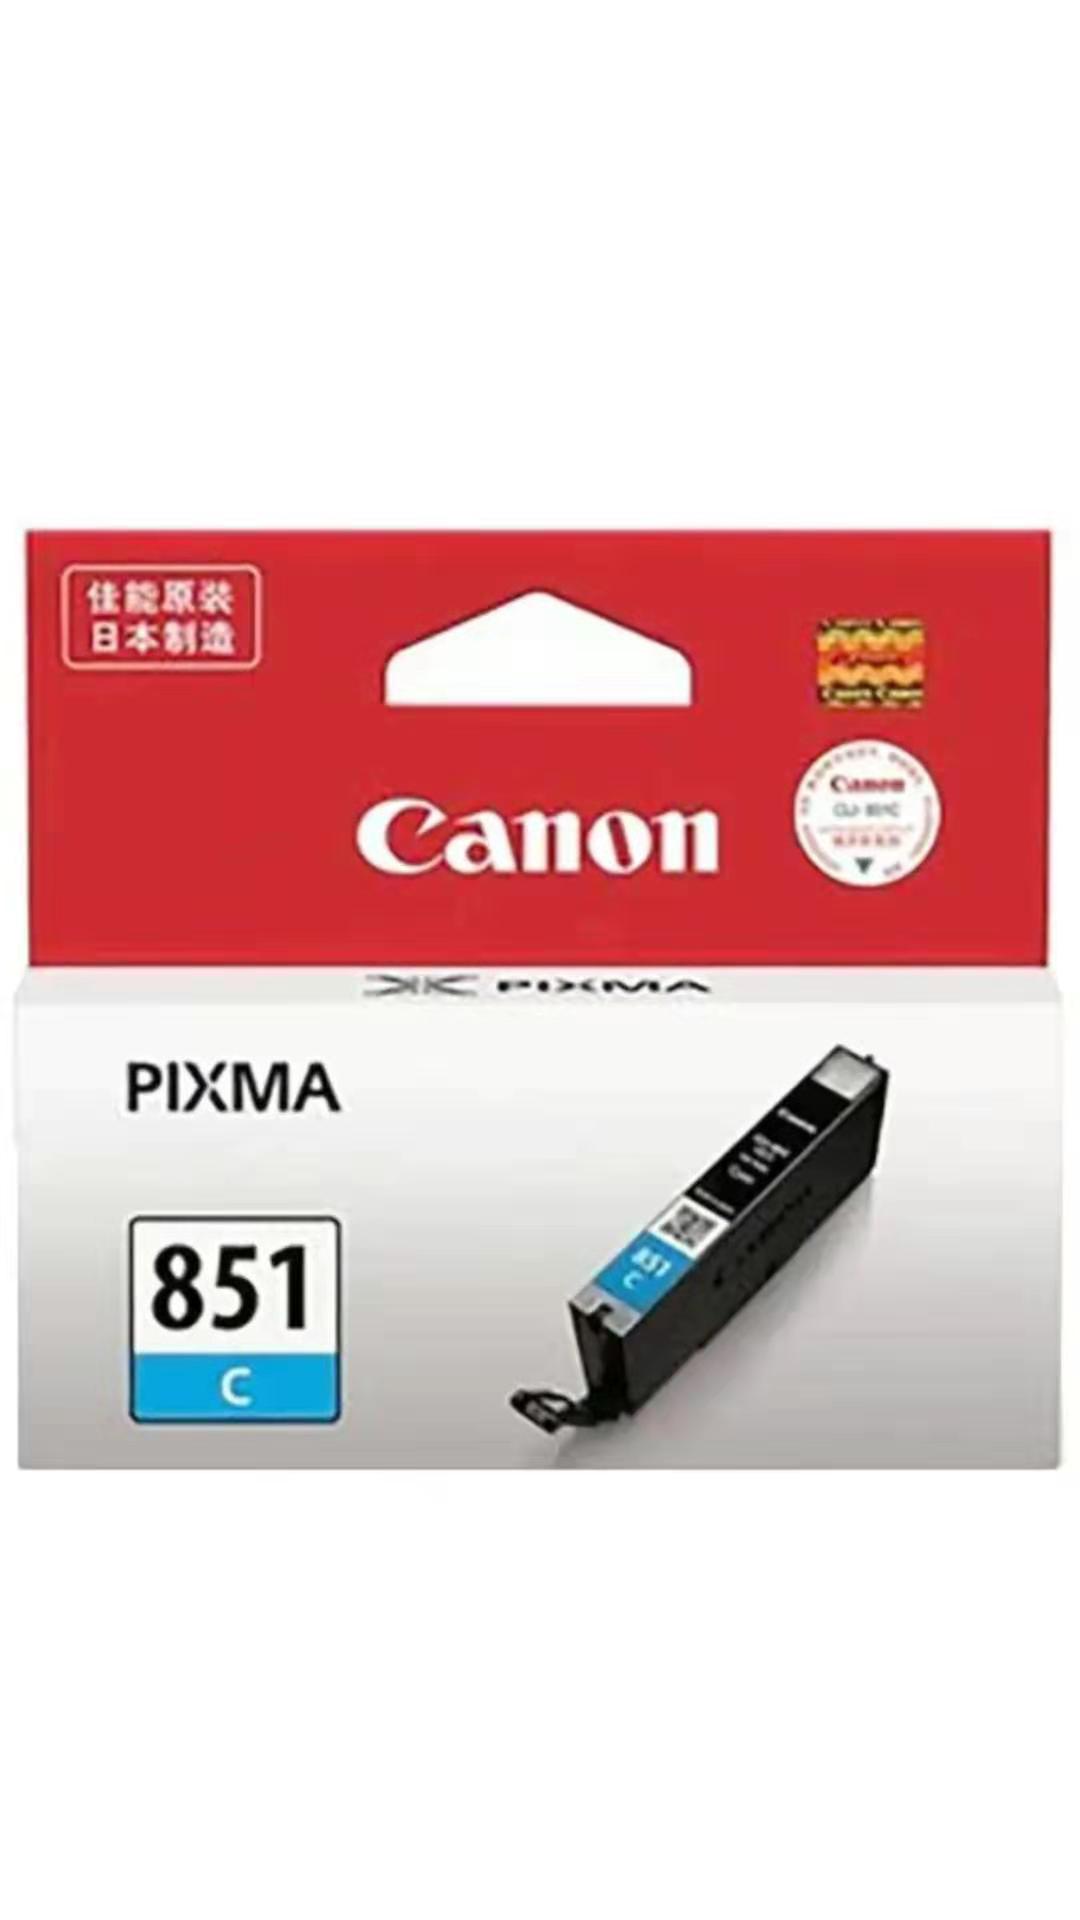 佳能CLI-851C青色墨盒适用于佳能7280彩色打印机_http://www.zhongqingyang.cn/img/images/C201907/1563181156225.jpg